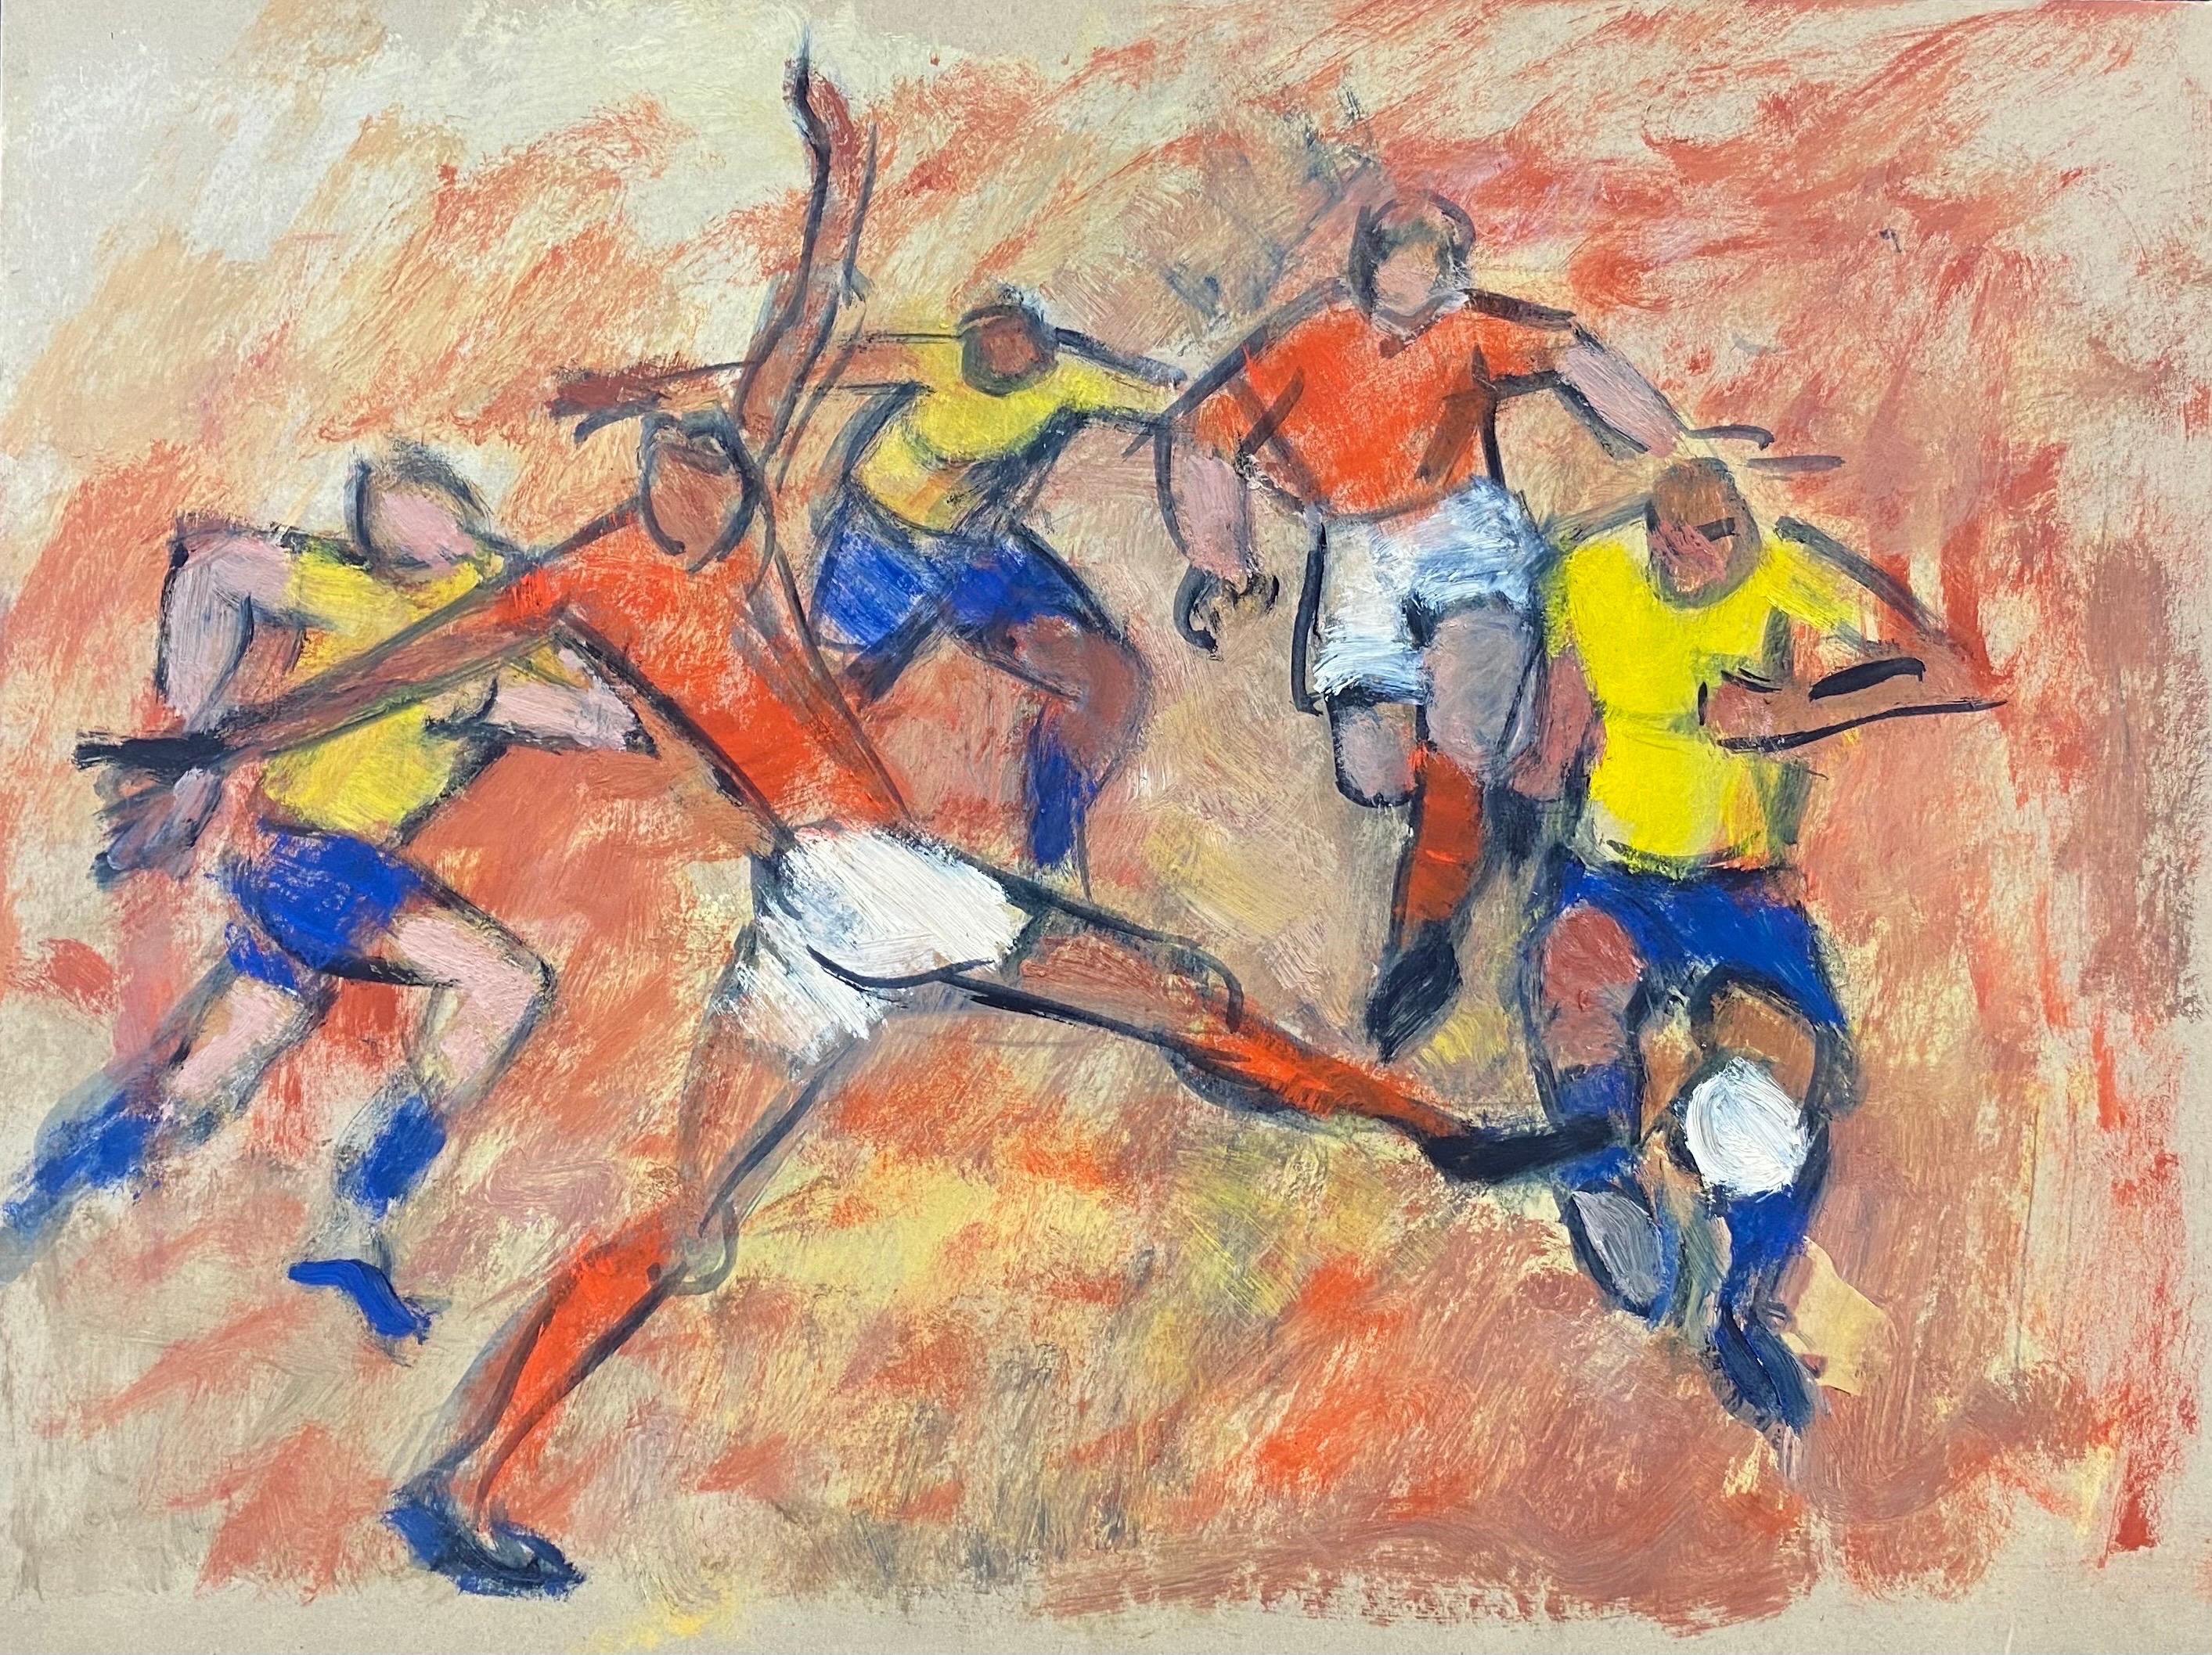 Peinture à l'huile moderniste allemande du 20e siècle représentant une rencontre de football